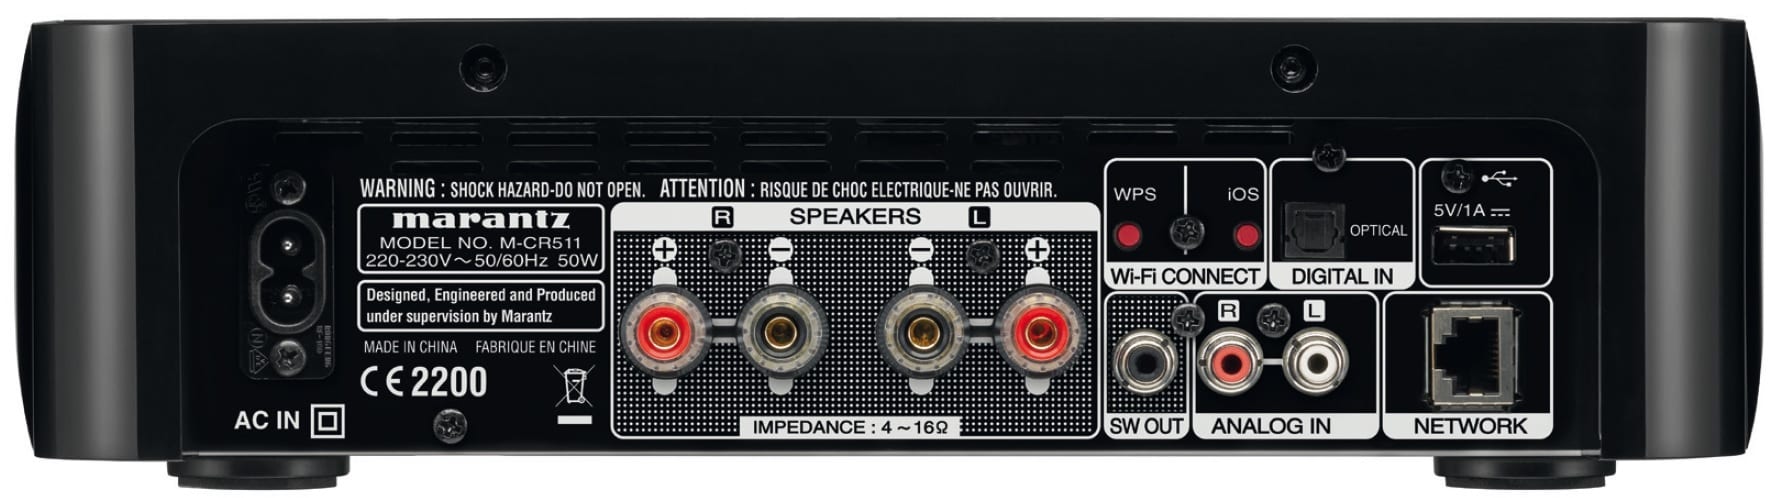 Marantz M-CR511 wit - achterkant - Stereo receiver